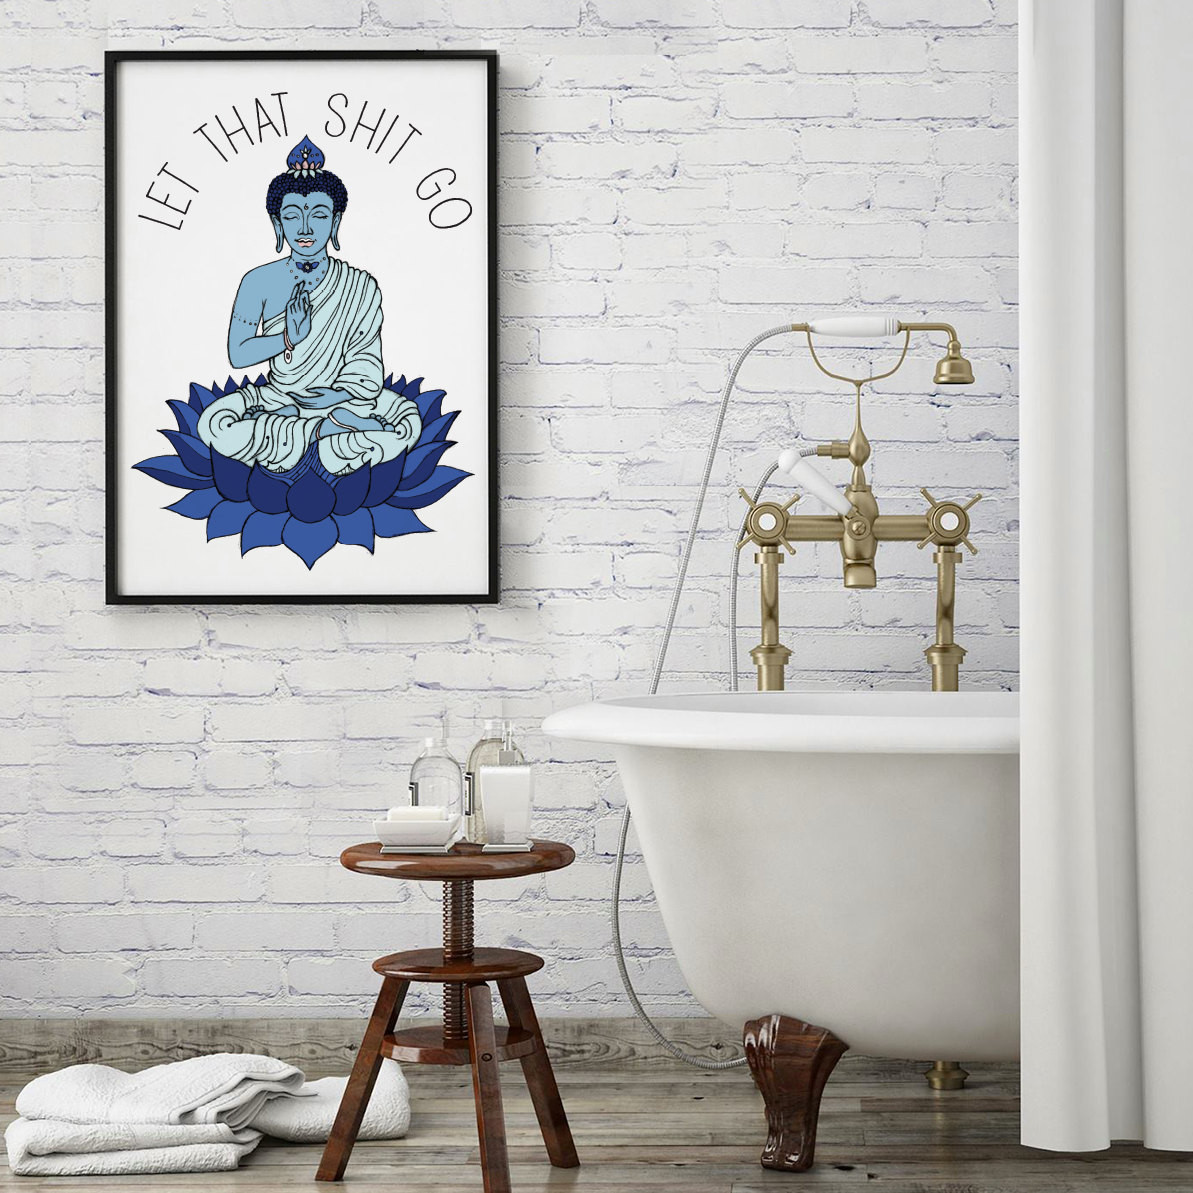 Buddha Bathroom Decor
 Bathroom Decor Let that sht go Yoga art Buddha by